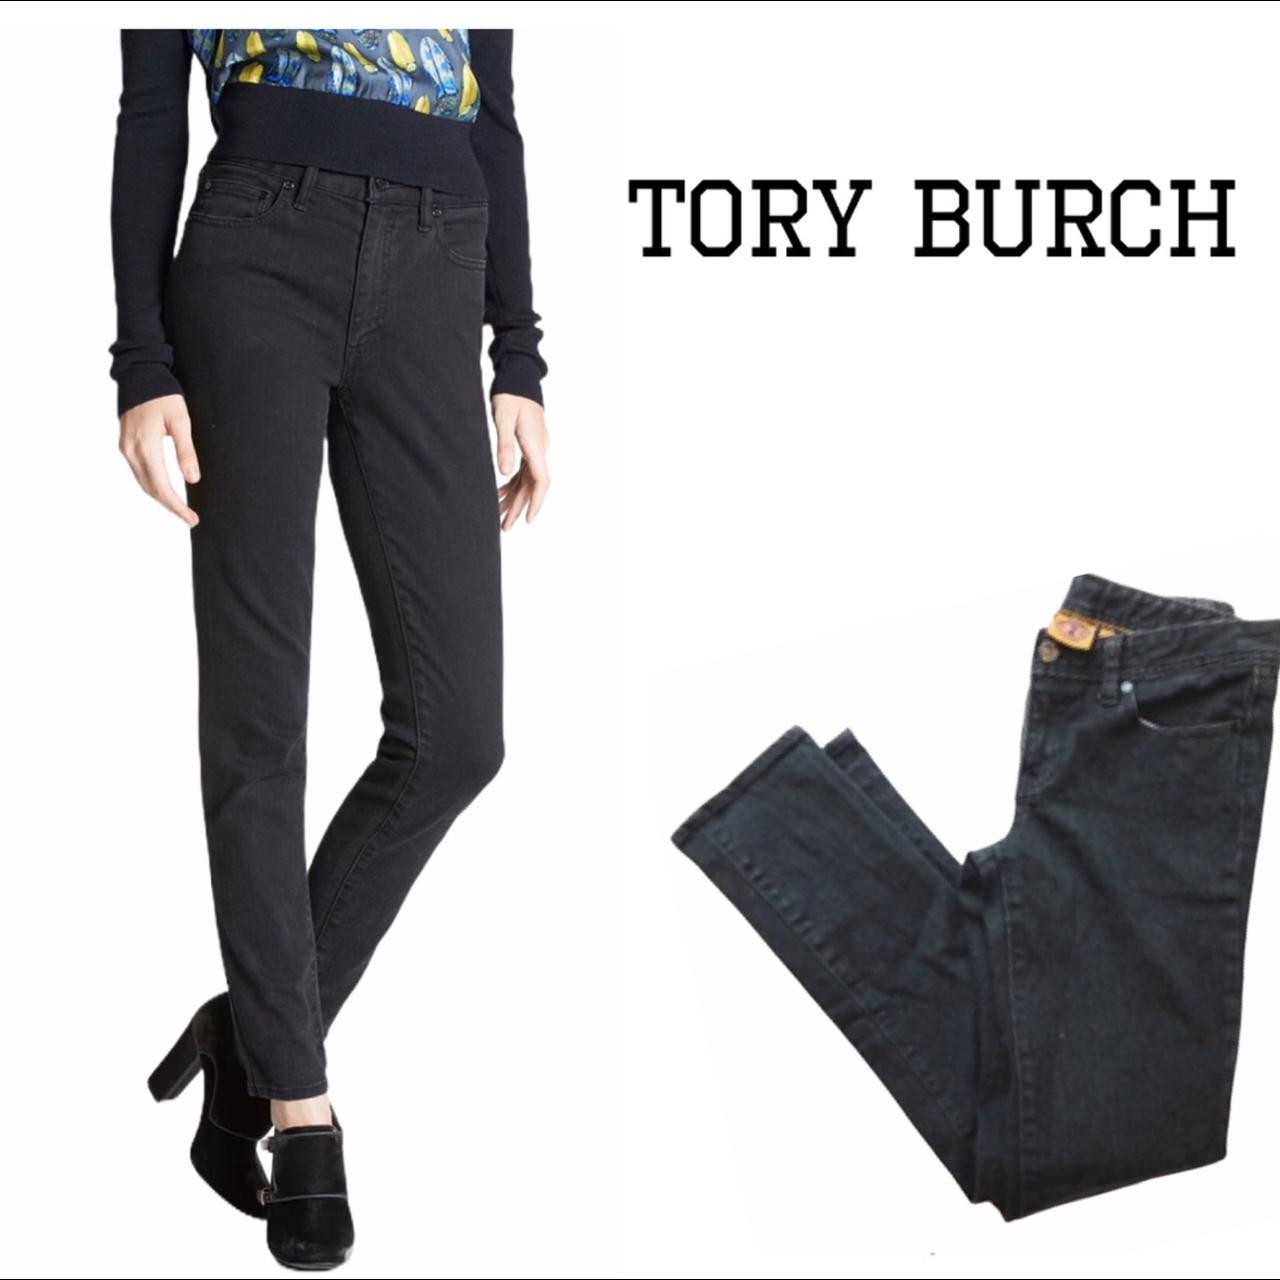 Tory Burch Women's Jeans | Depop